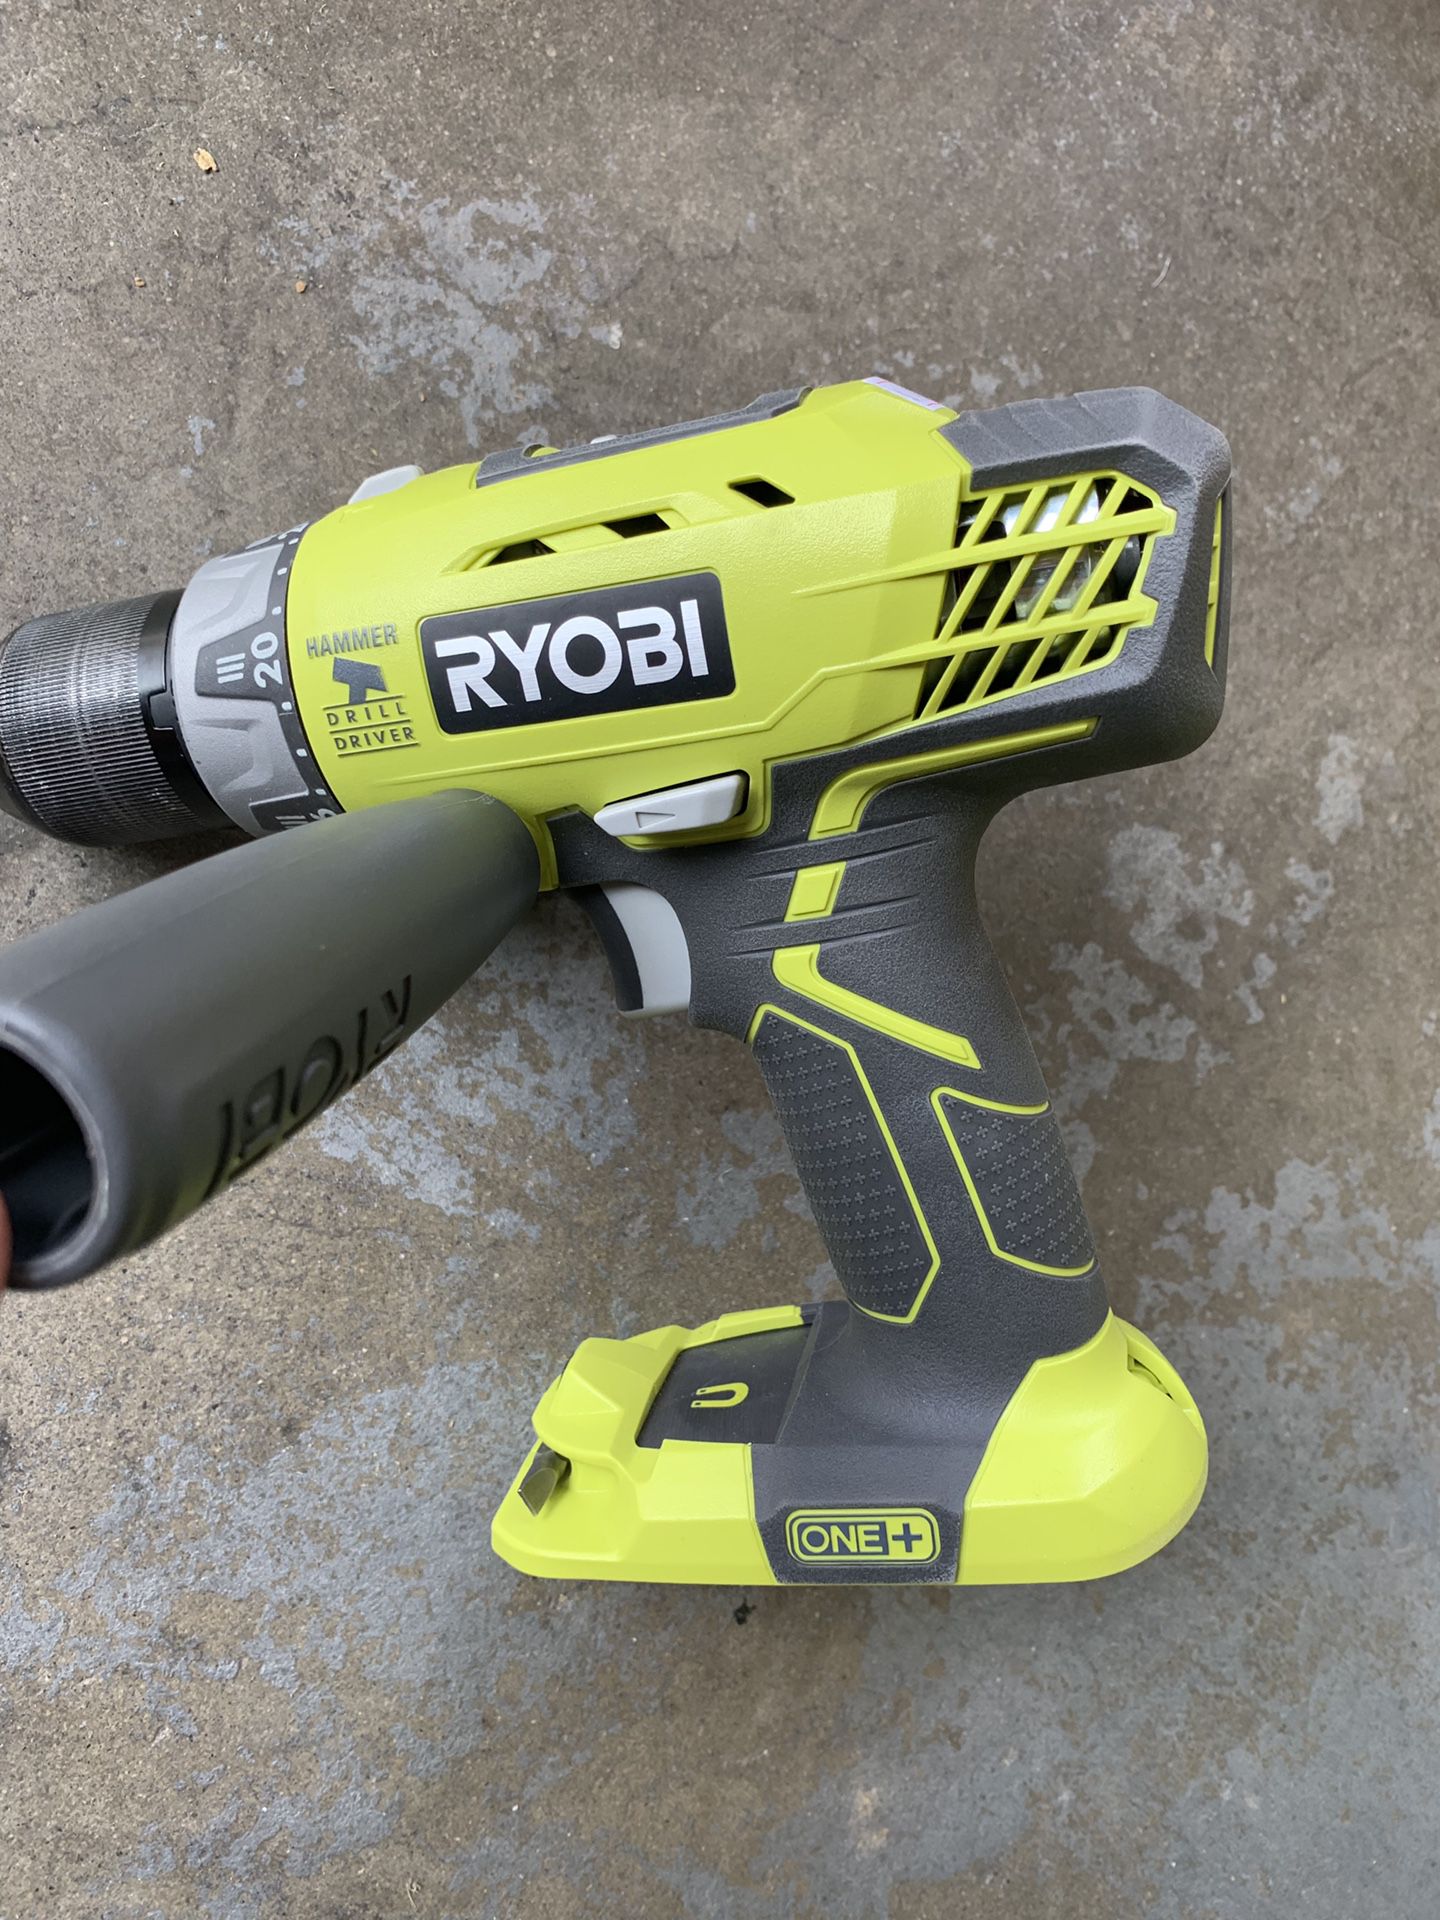 Ryobi 18v hammer drill